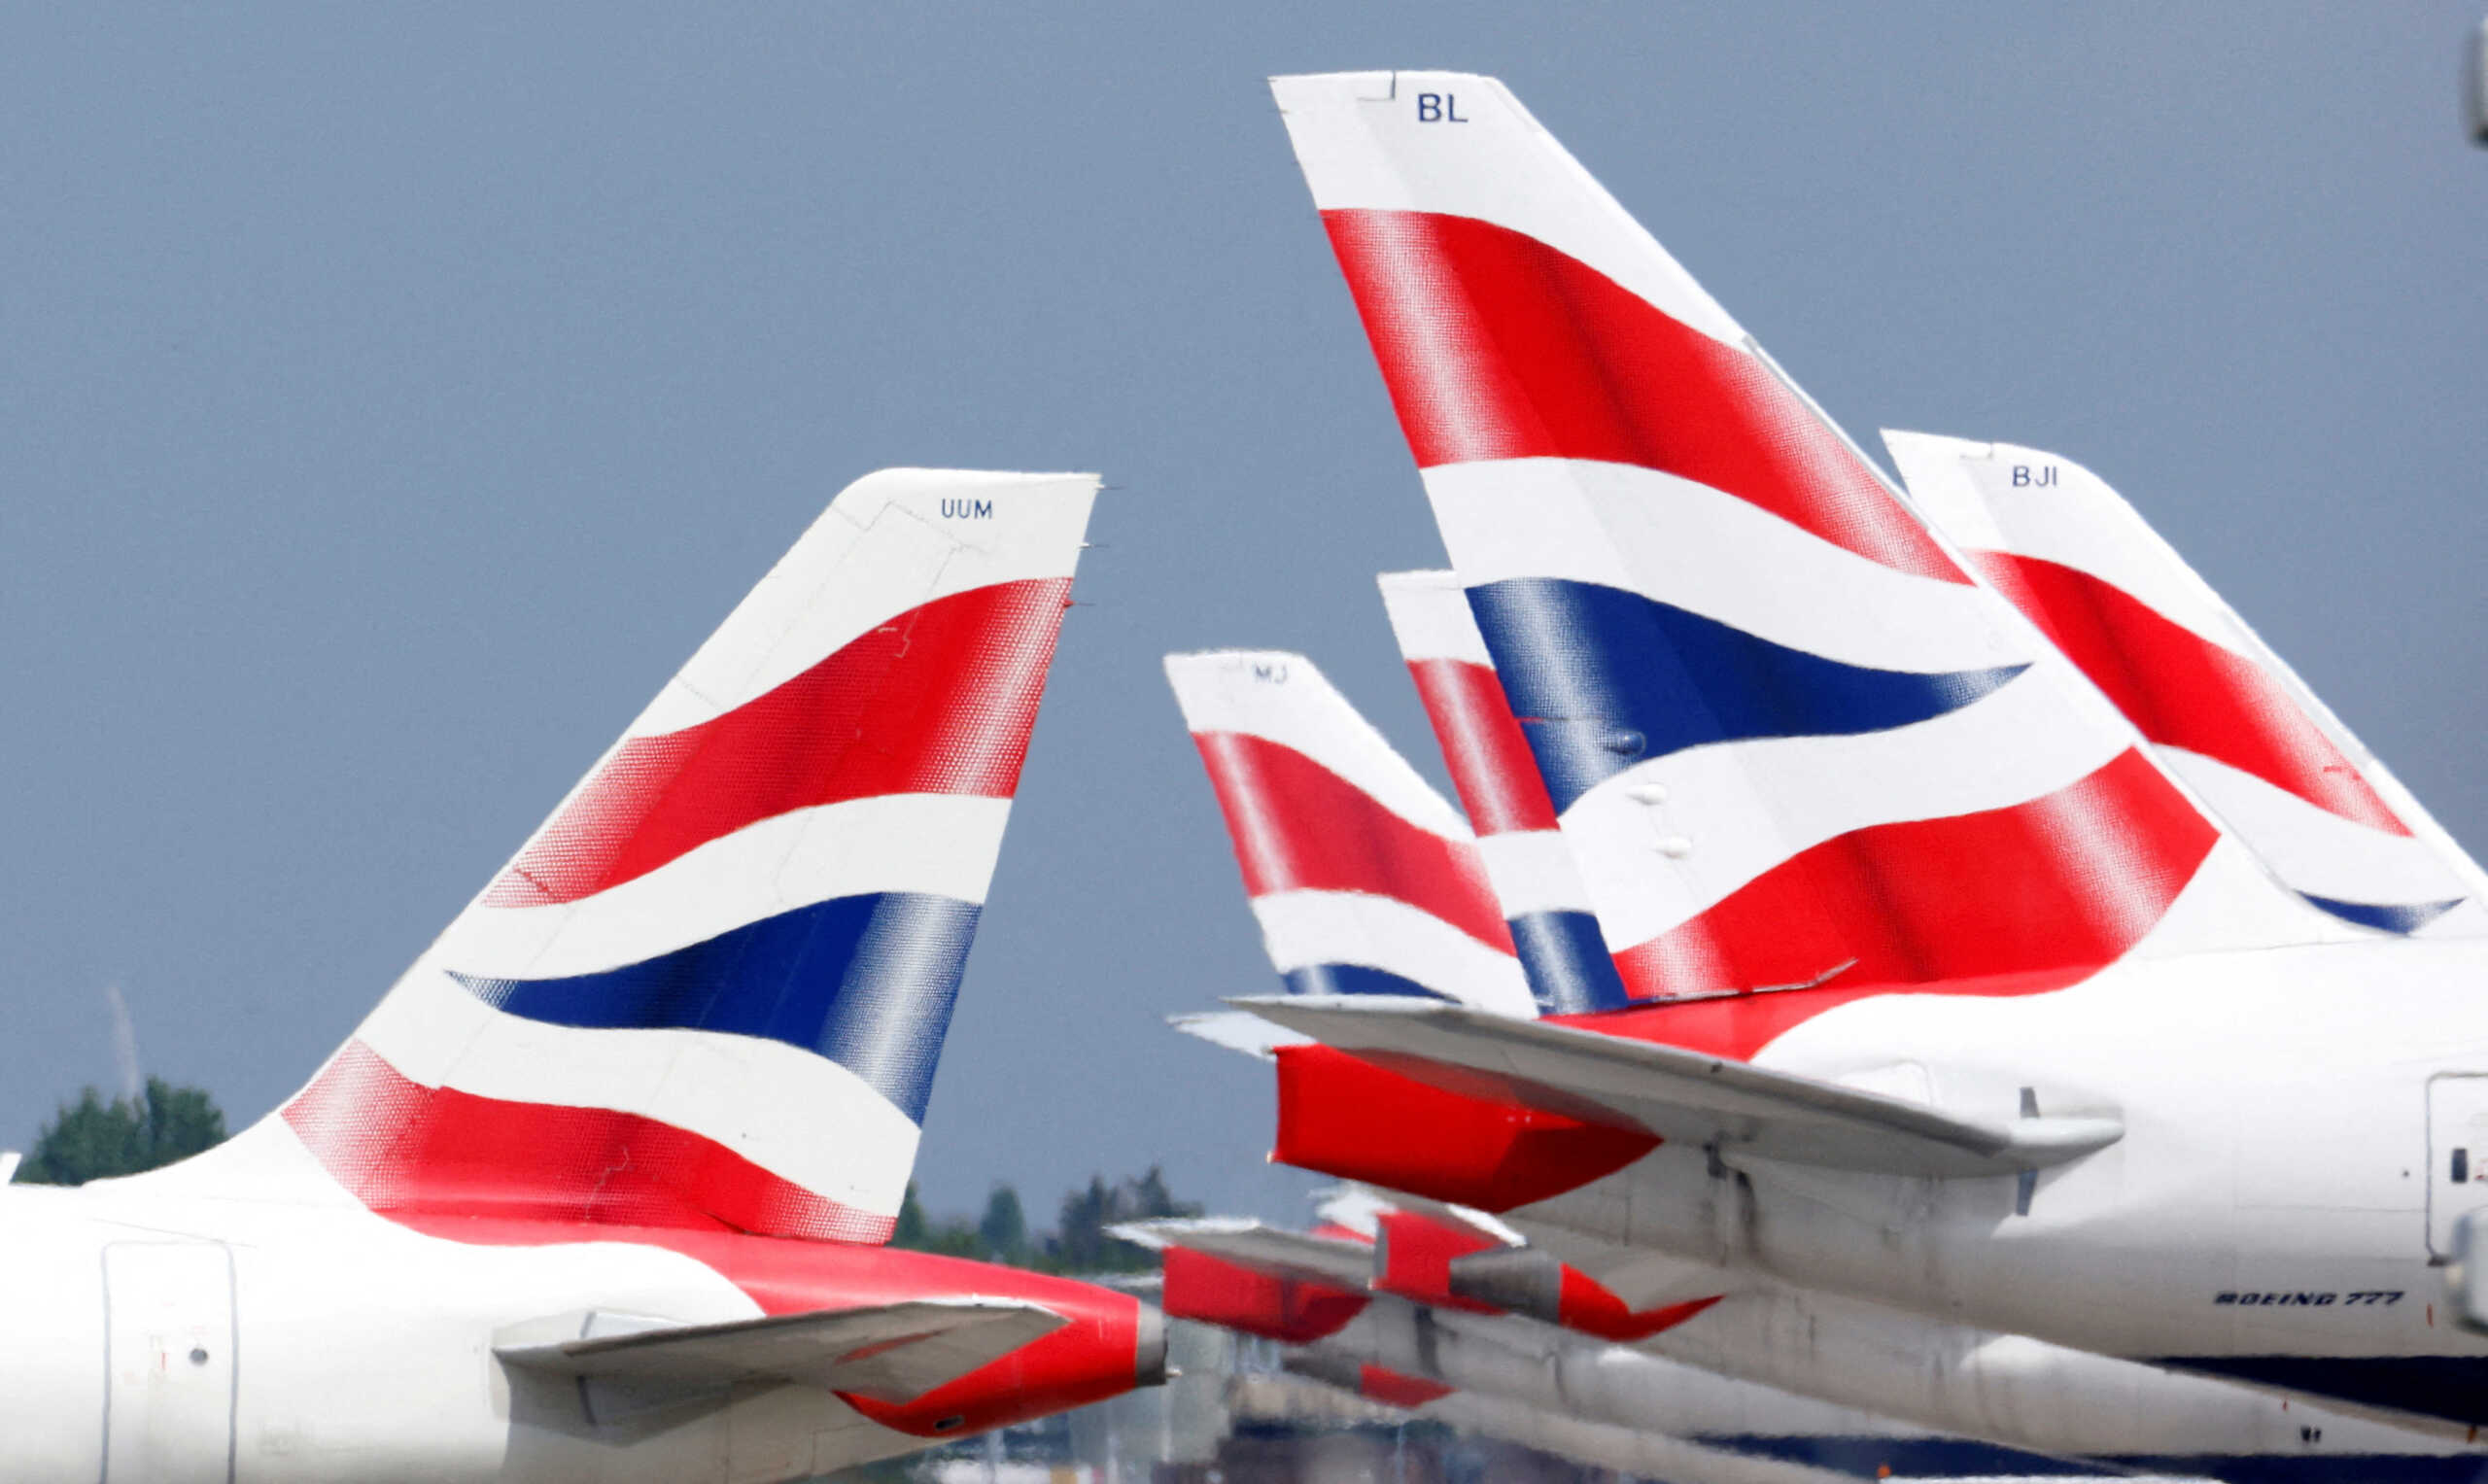 Η British Airways μειώνει το 11% των πτήσεών της εν μέσω καλοκαιριού λόγω έλλειψης προσωπικού